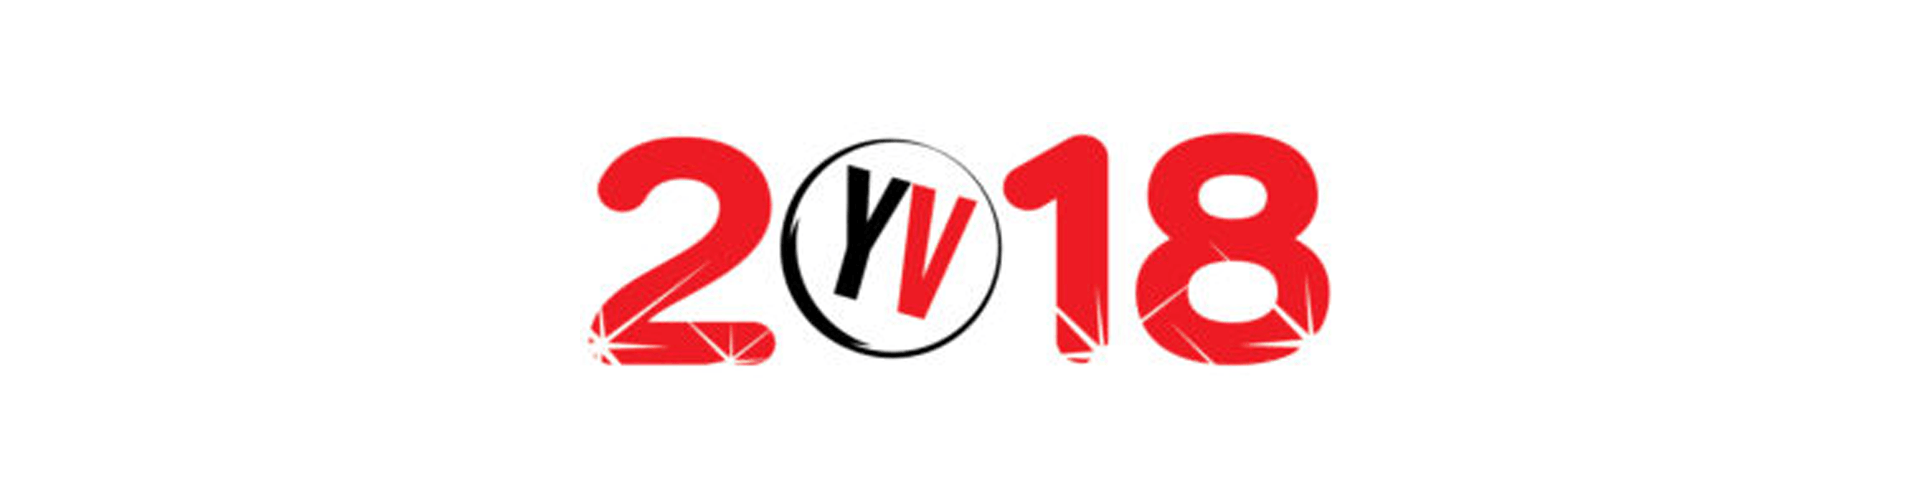 Google 2018 Logo - Young Voices 2018